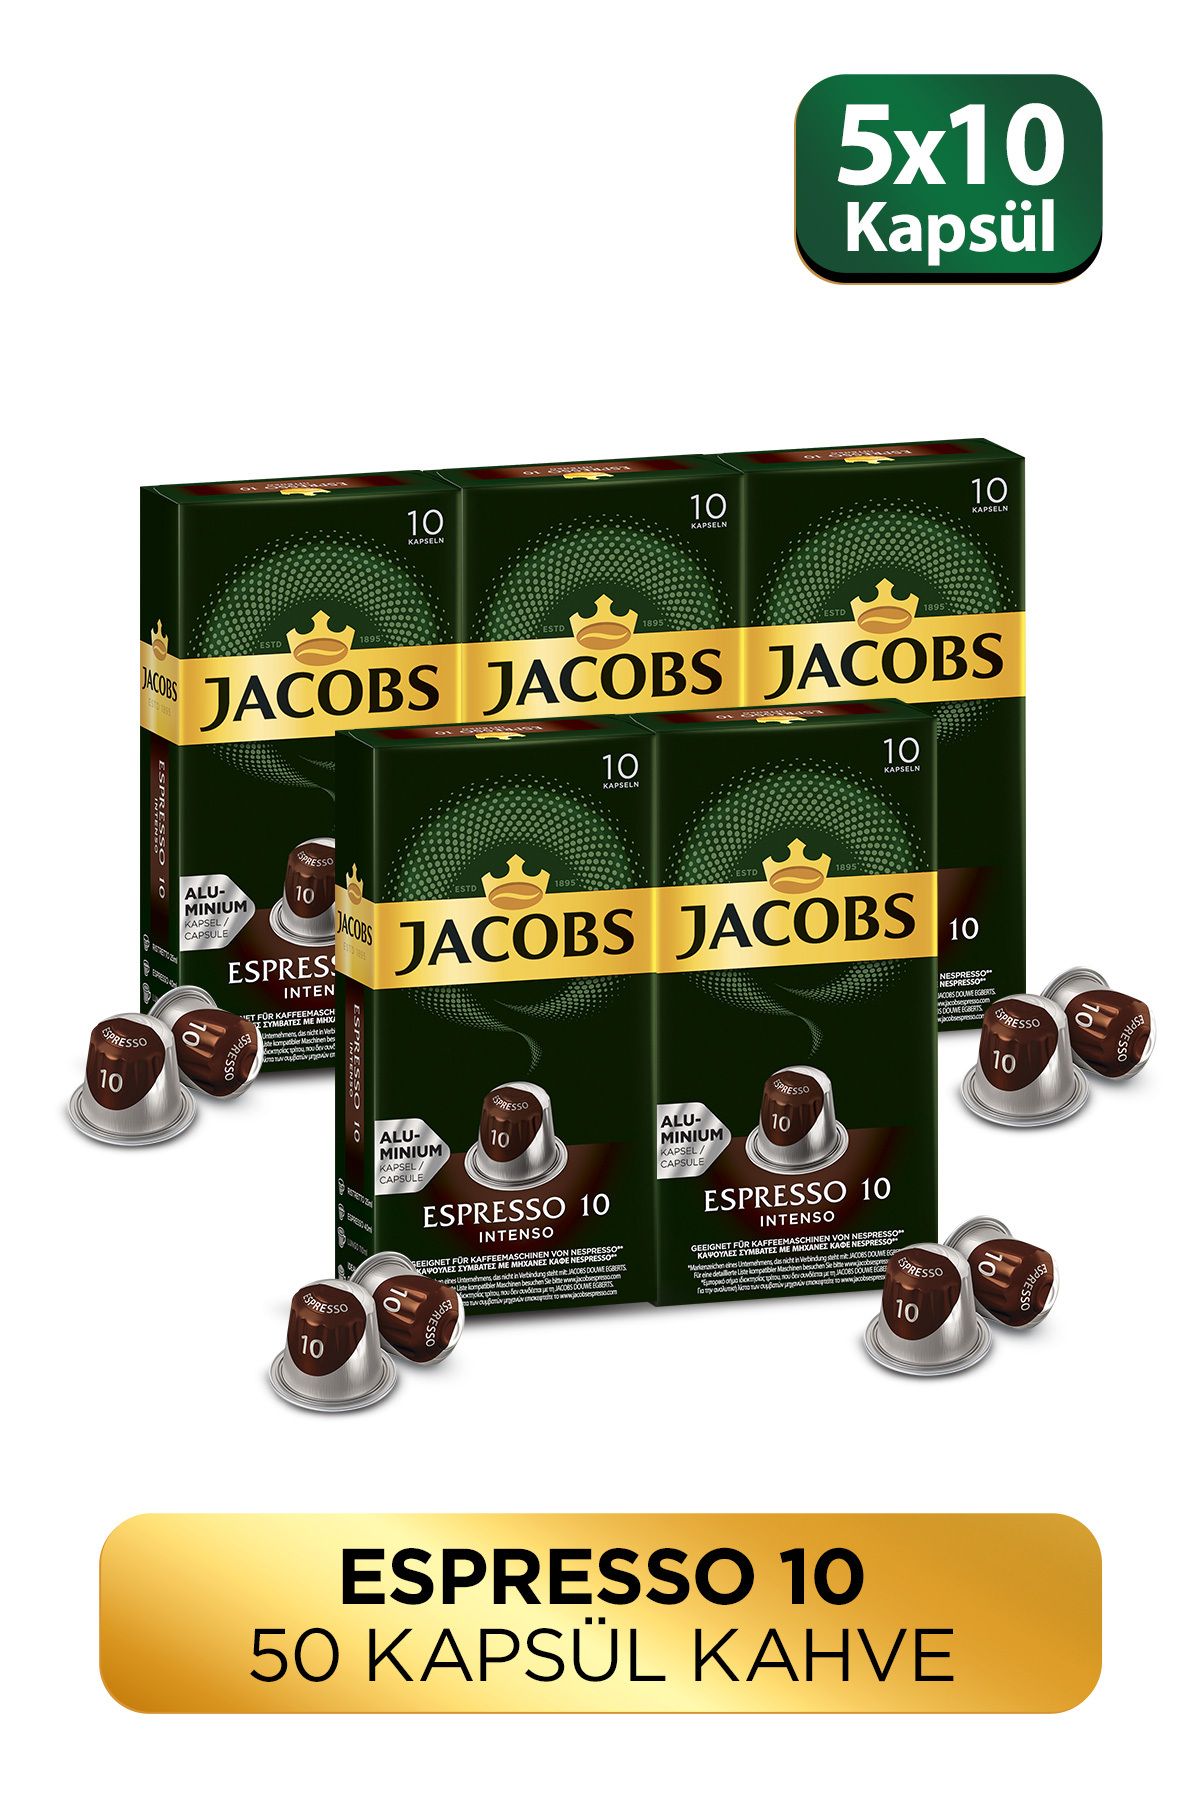 Jacobs Espresso 10 Intenso Nespresso Uyumlu Alüminyum Kapsül Kahve 10 Adet X 5 Paket